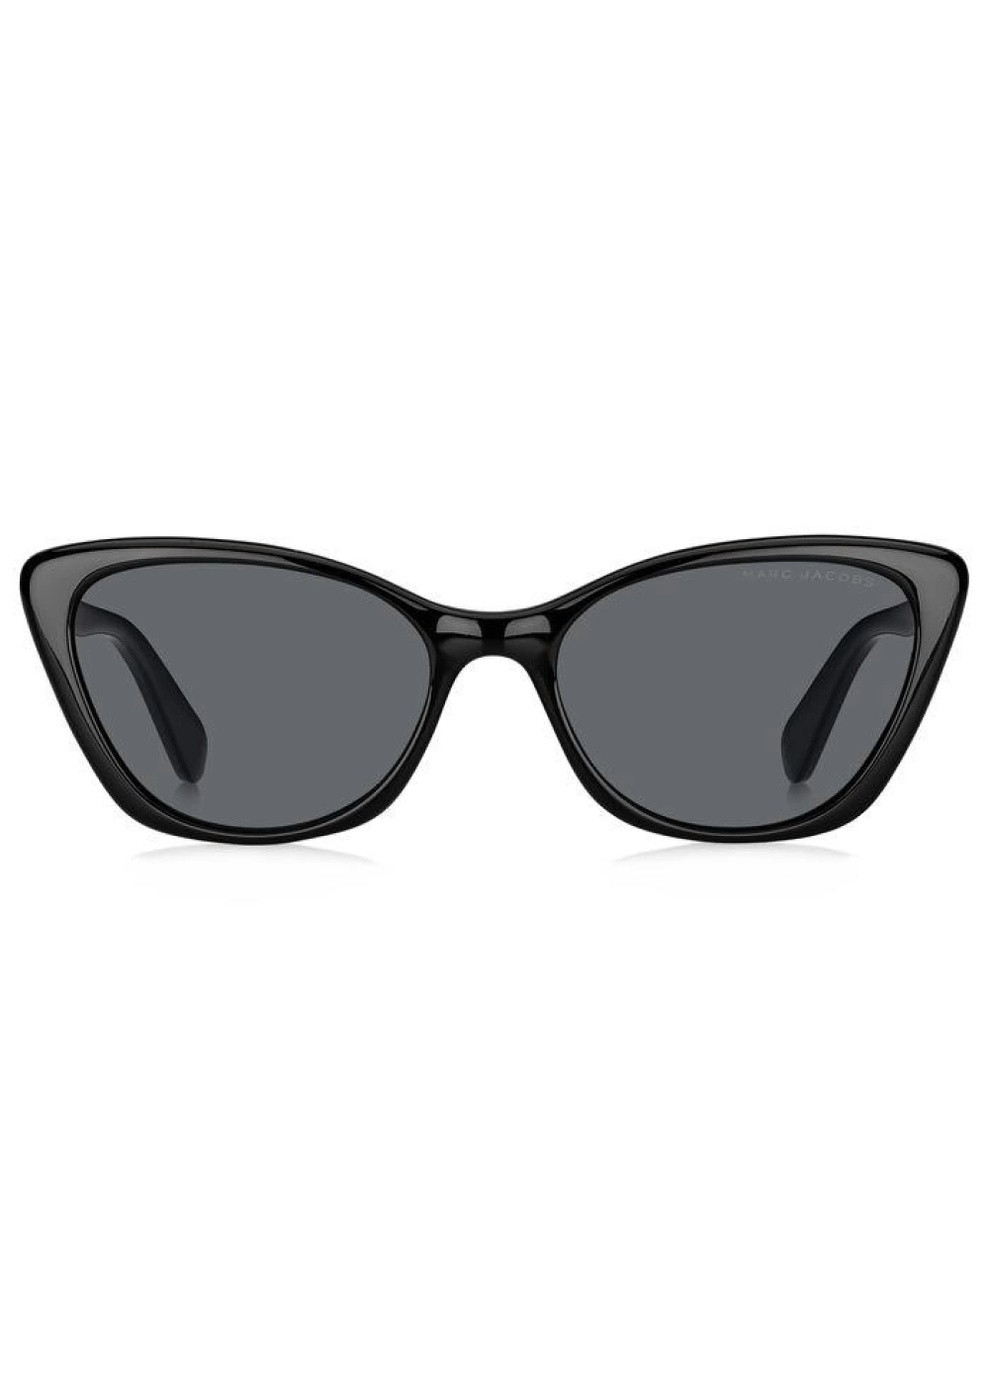 Солнцезащитные очки Marc Jacobs marc 362s 807 ir (259611808)